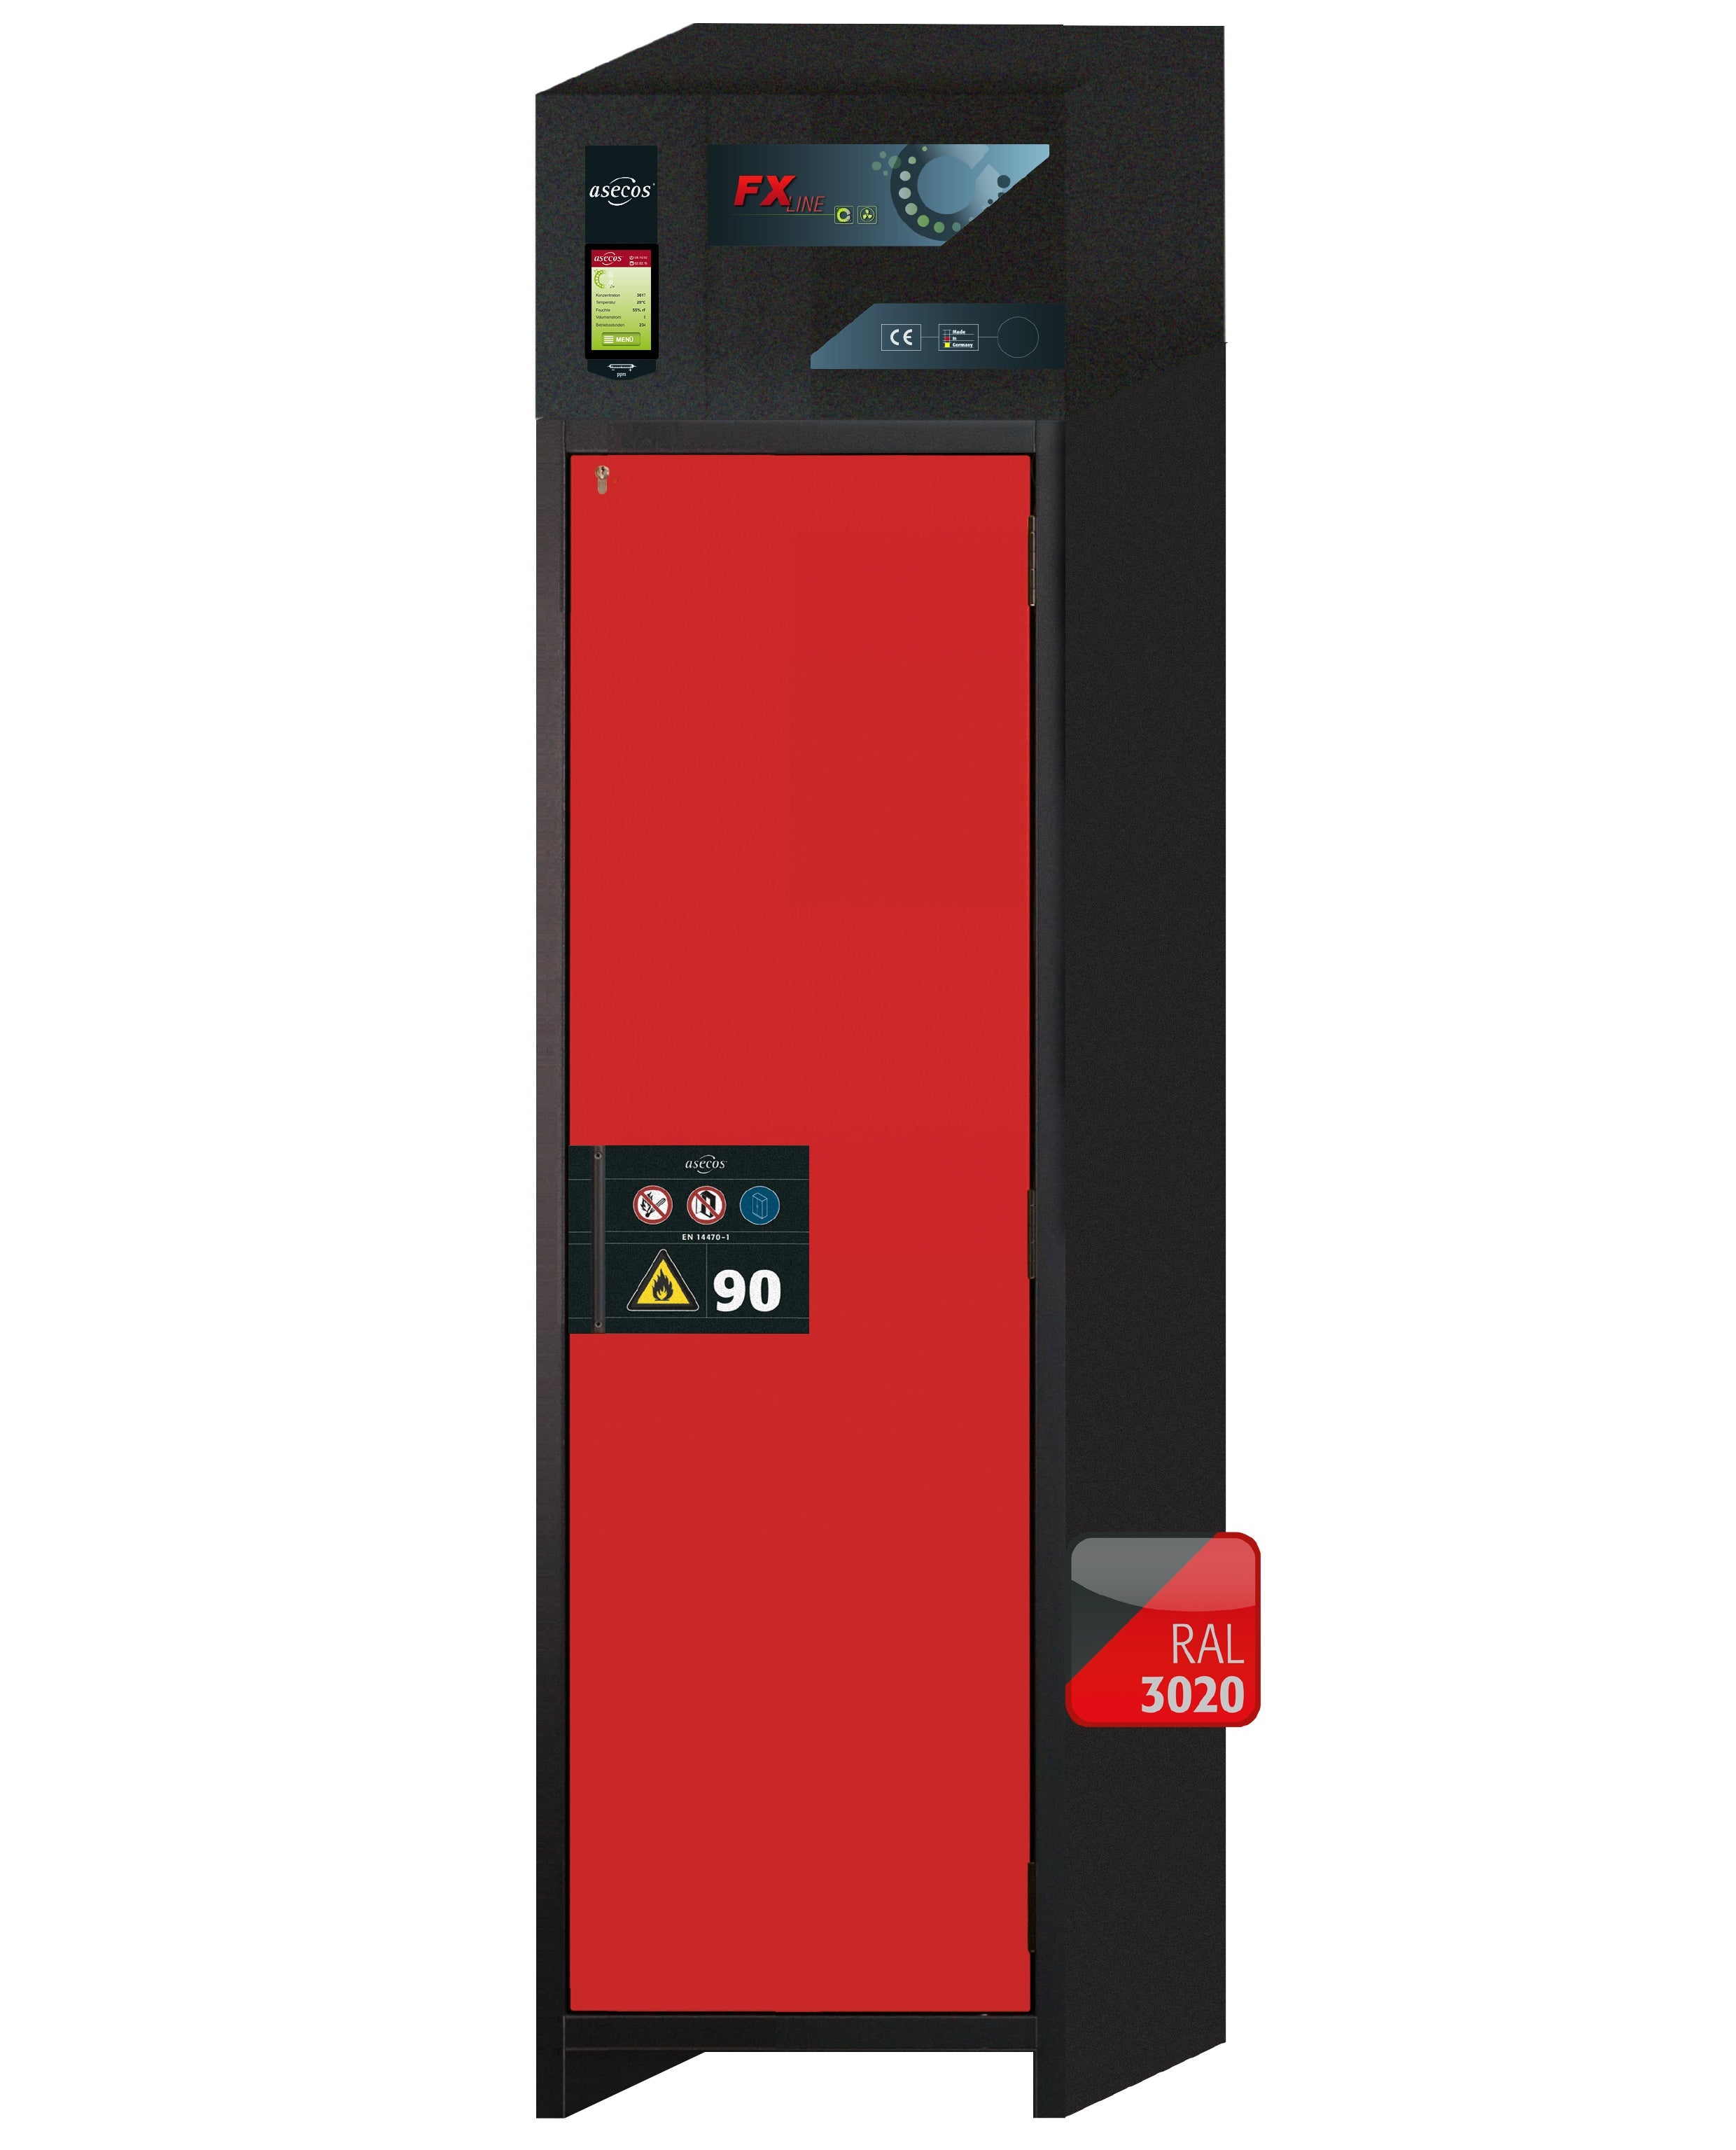 Armoire de filtration d'air recyclé type 90 FX-PEGASUS-90 modèle FX90.229.060.WDACR en rouge signalisation RAL 3020 avec 4 plateaux coulissants standard (acier inoxydable 1.4301)